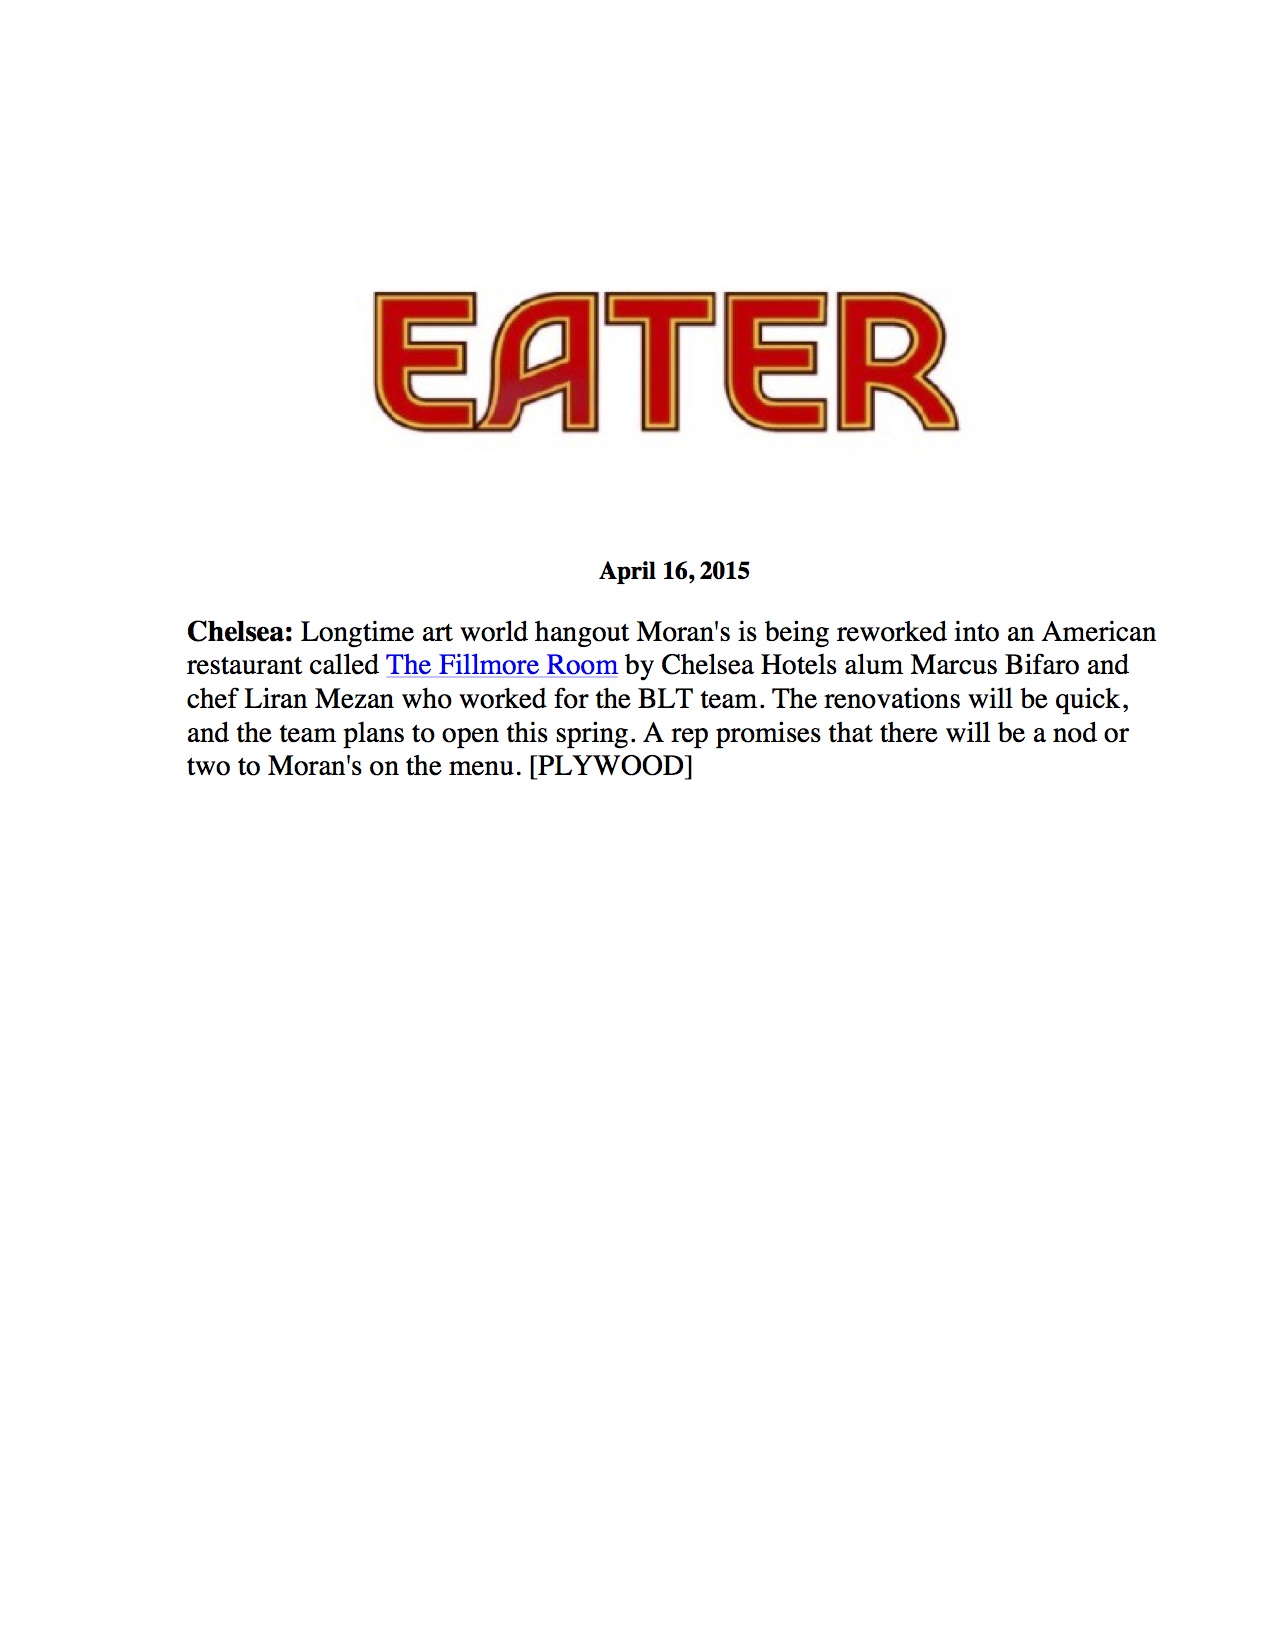 TFR - Eater - 4.16.15.jpg